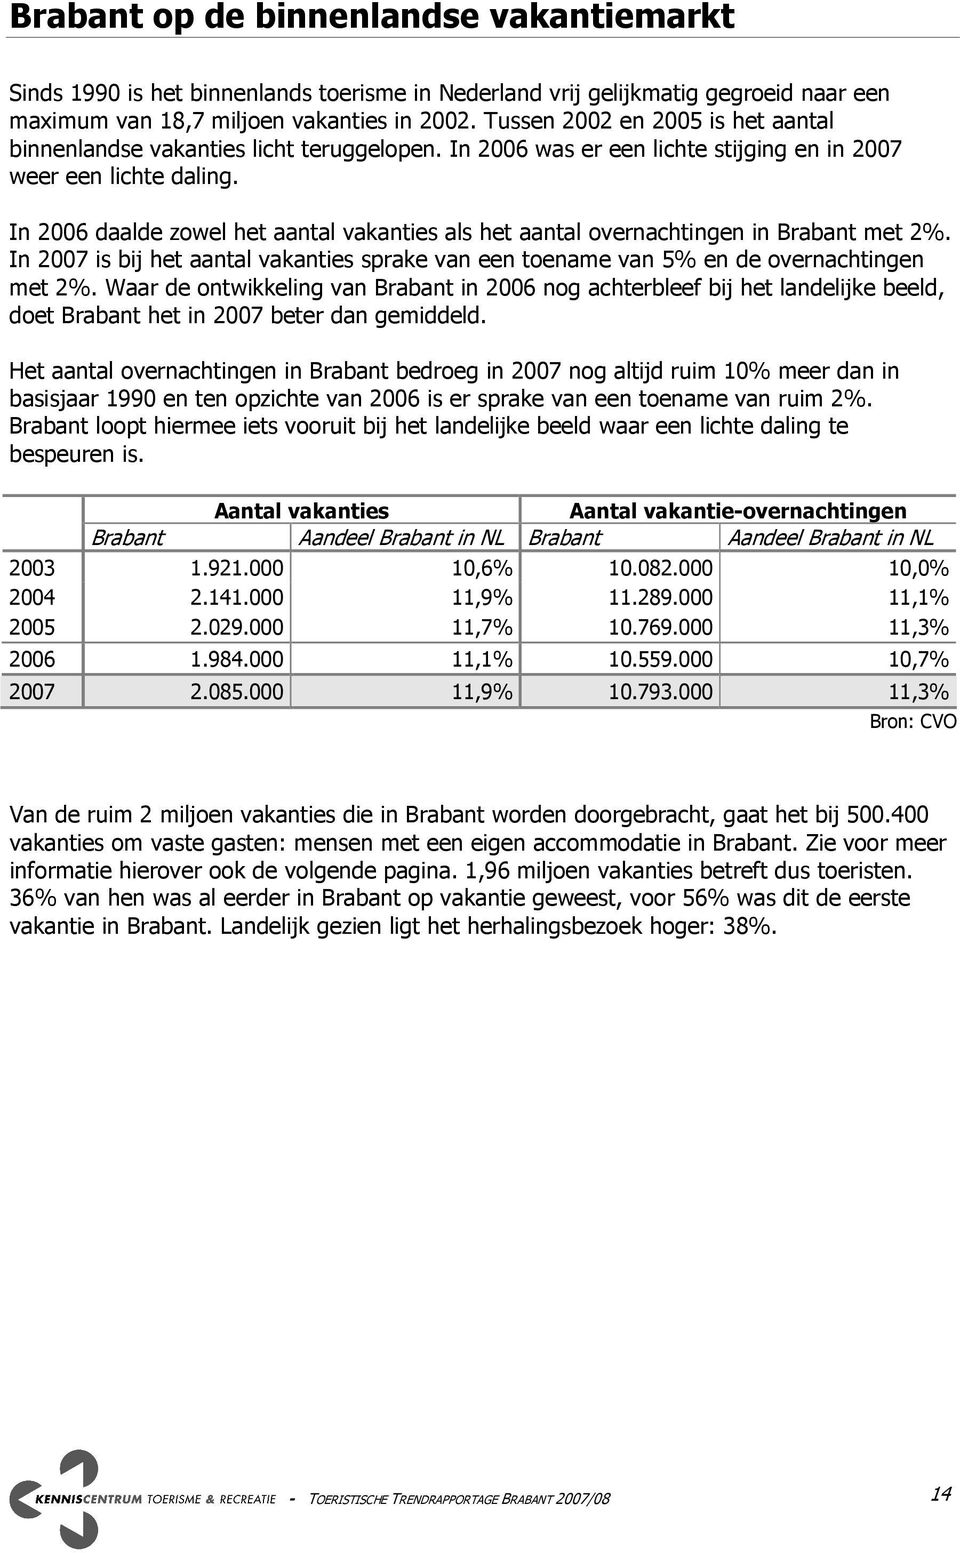 In 2006 daalde zowel het aantal vakanties als het aantal overnachtingen in Brabant met 2%. In 2007 is bij het aantal vakanties sprake van een toename van 5% en de overnachtingen met 2%.